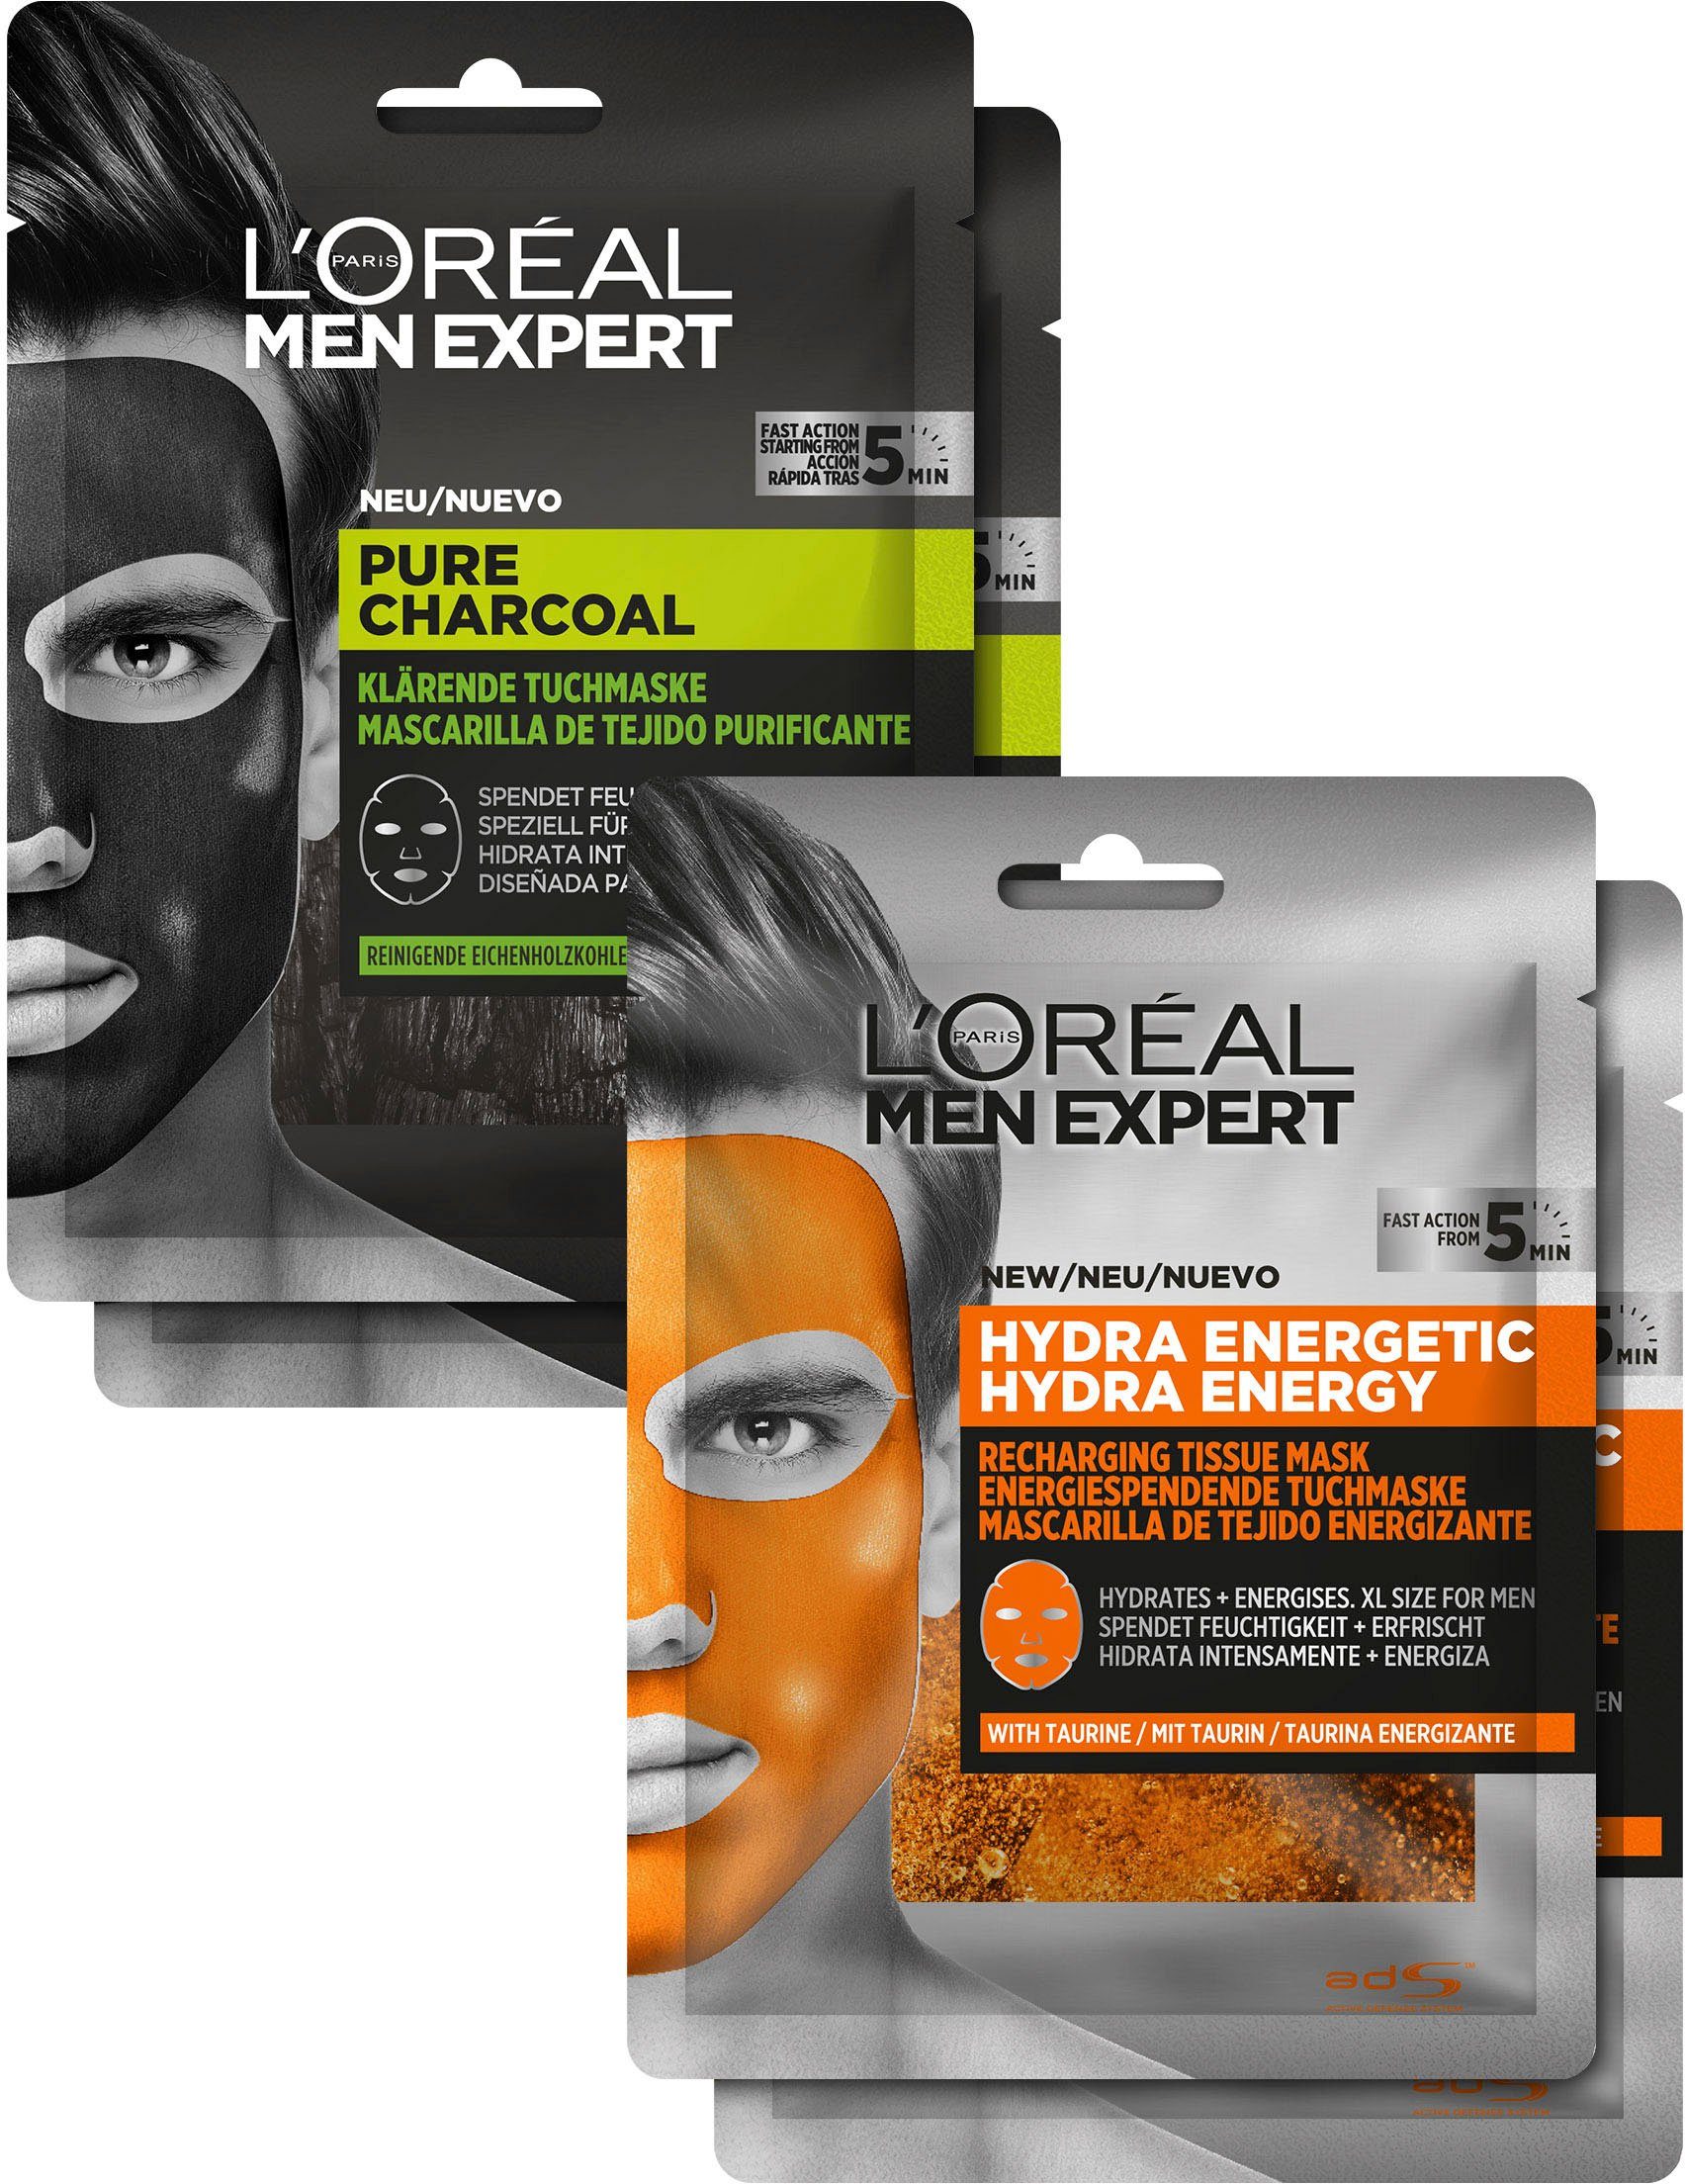 L'ORÉAL PARIS MEN EXPERT Gesichtsmasken-Set Pure Charcoal und Hydra Energy Set, 4-tlg.